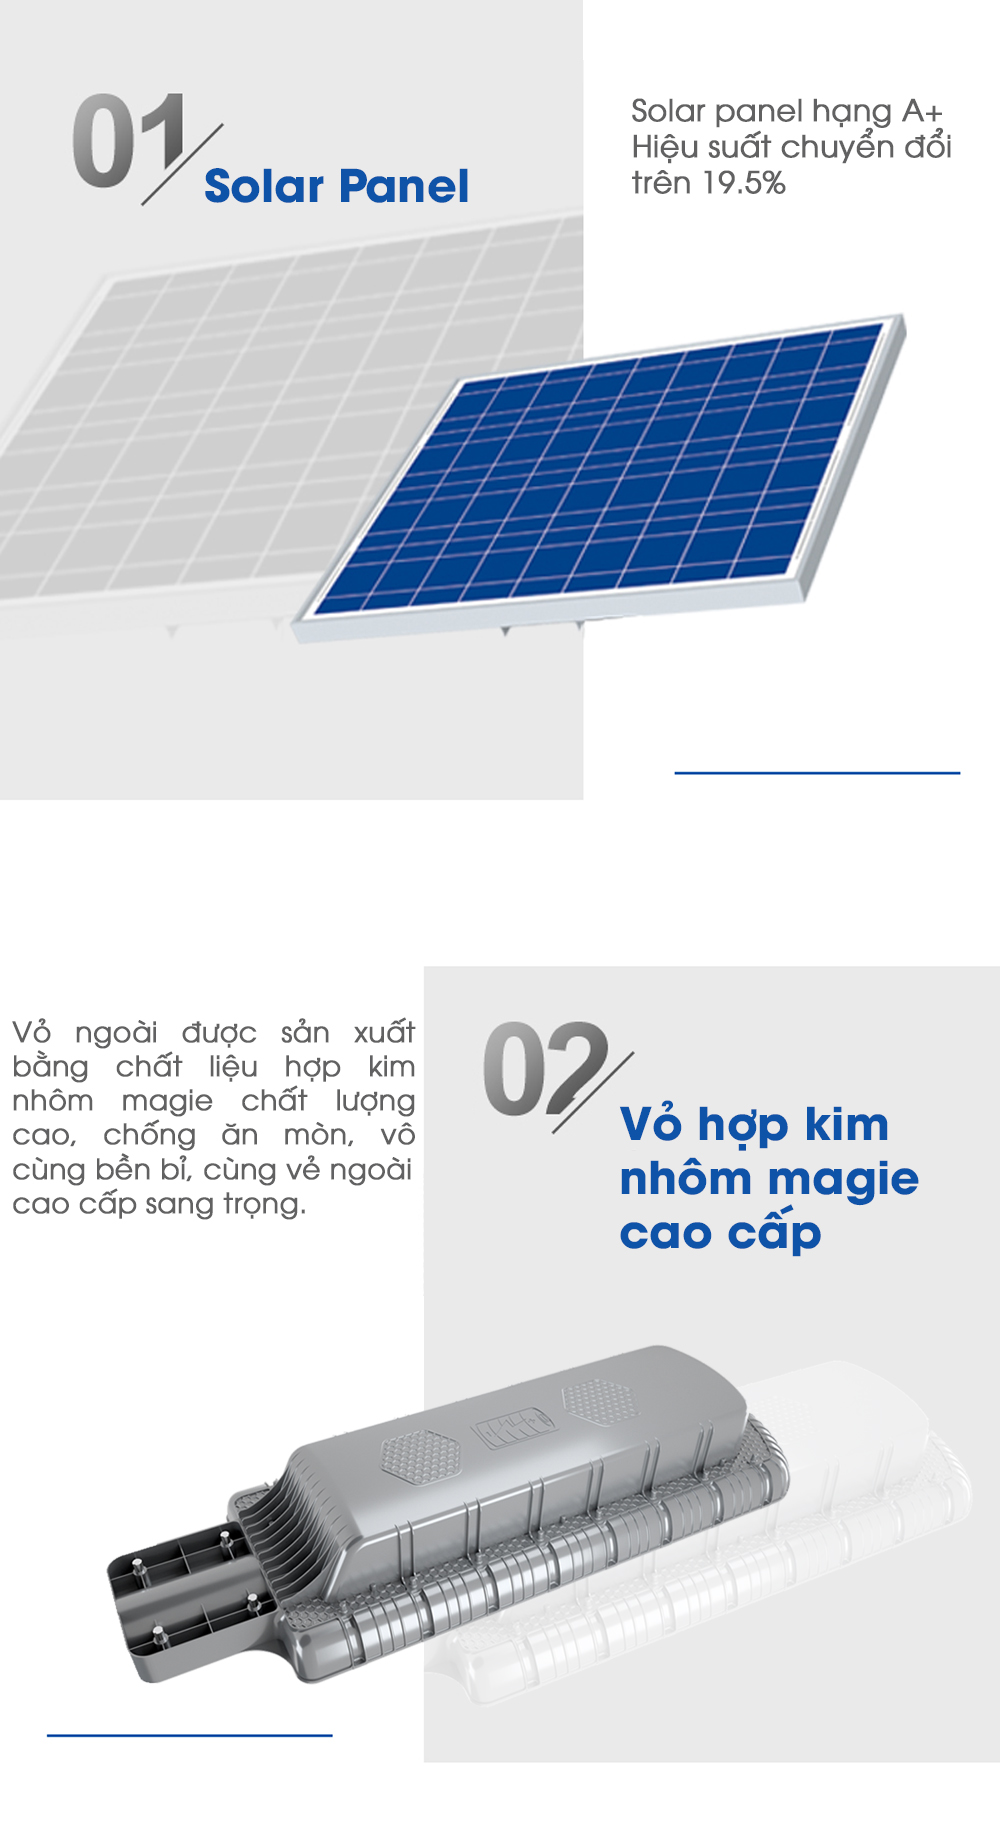 Đèn đường năng lượng mặt trời 80W Blue Carbon BCT-OLK3.0 - 4 điểm nổi trội